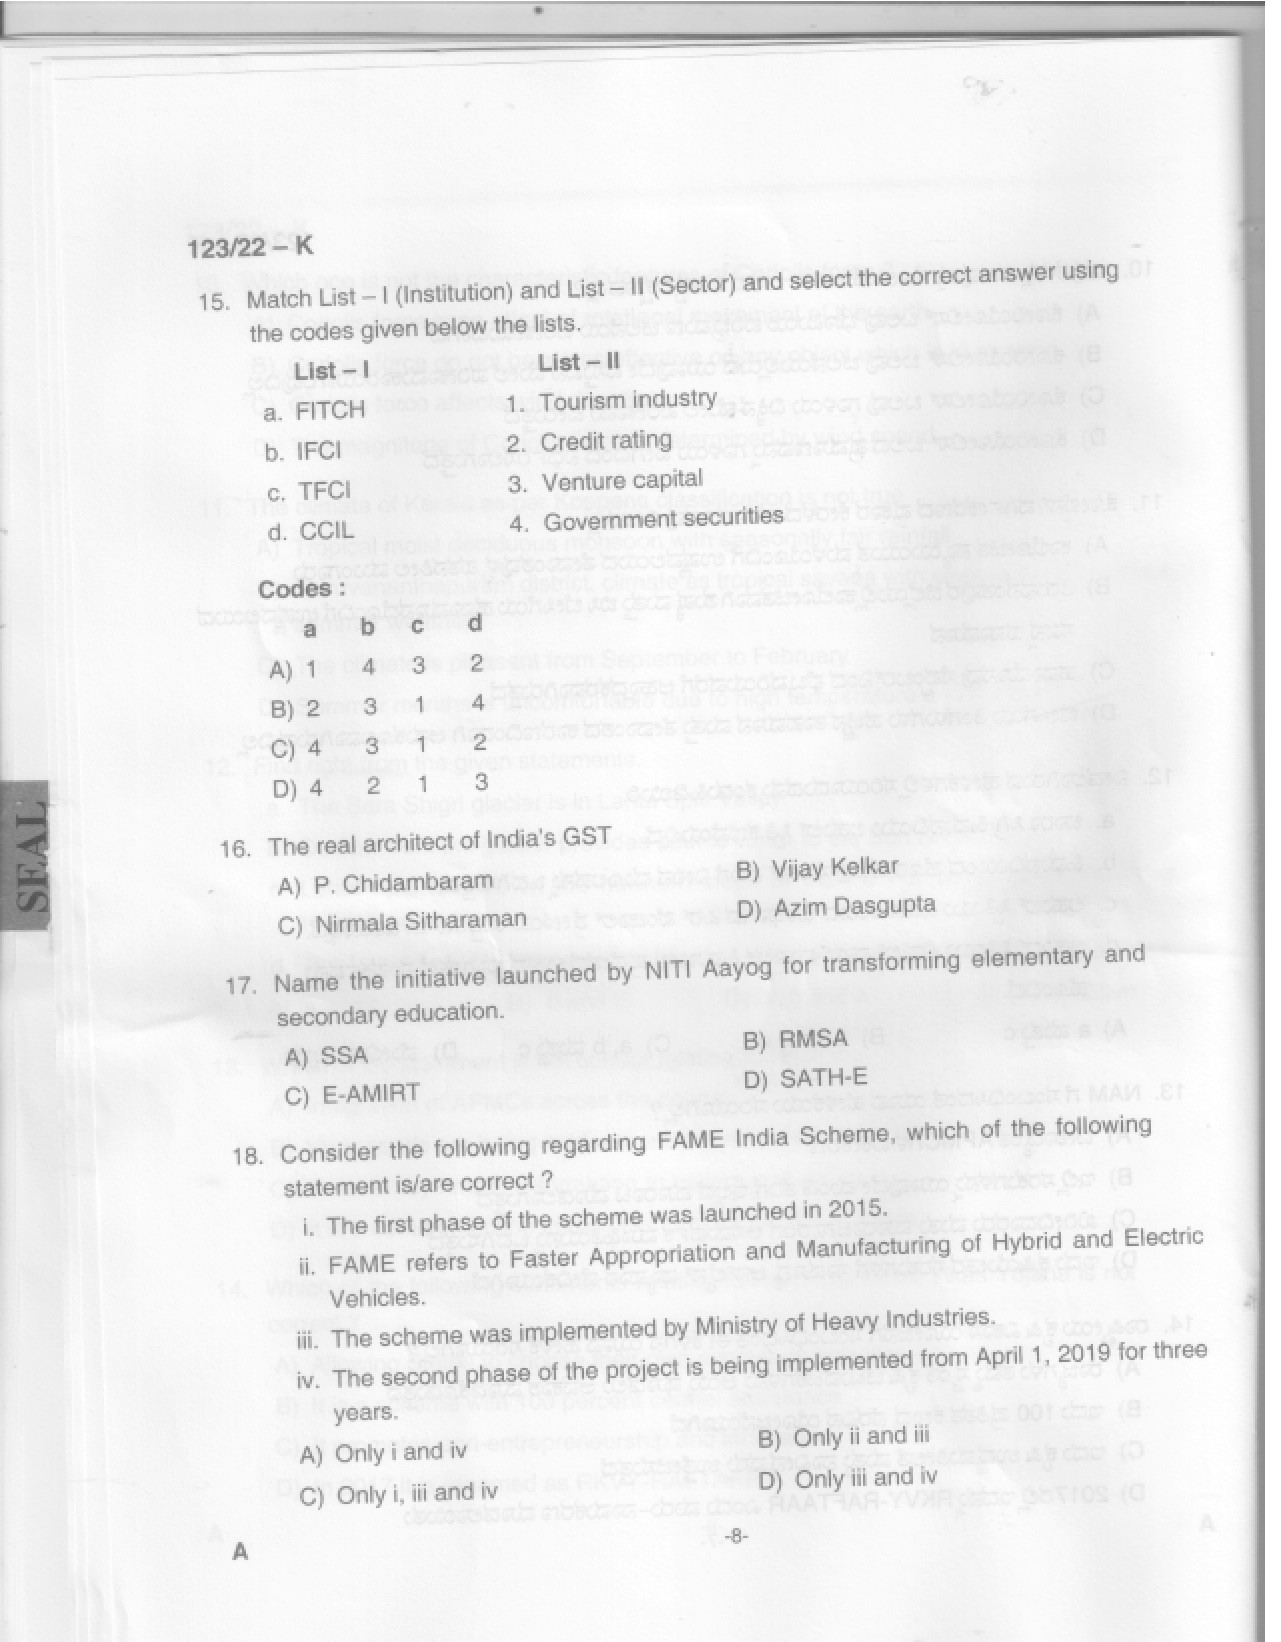 KPSC Junior Receptionist Kannada Exam 2022 Code 1232022 7